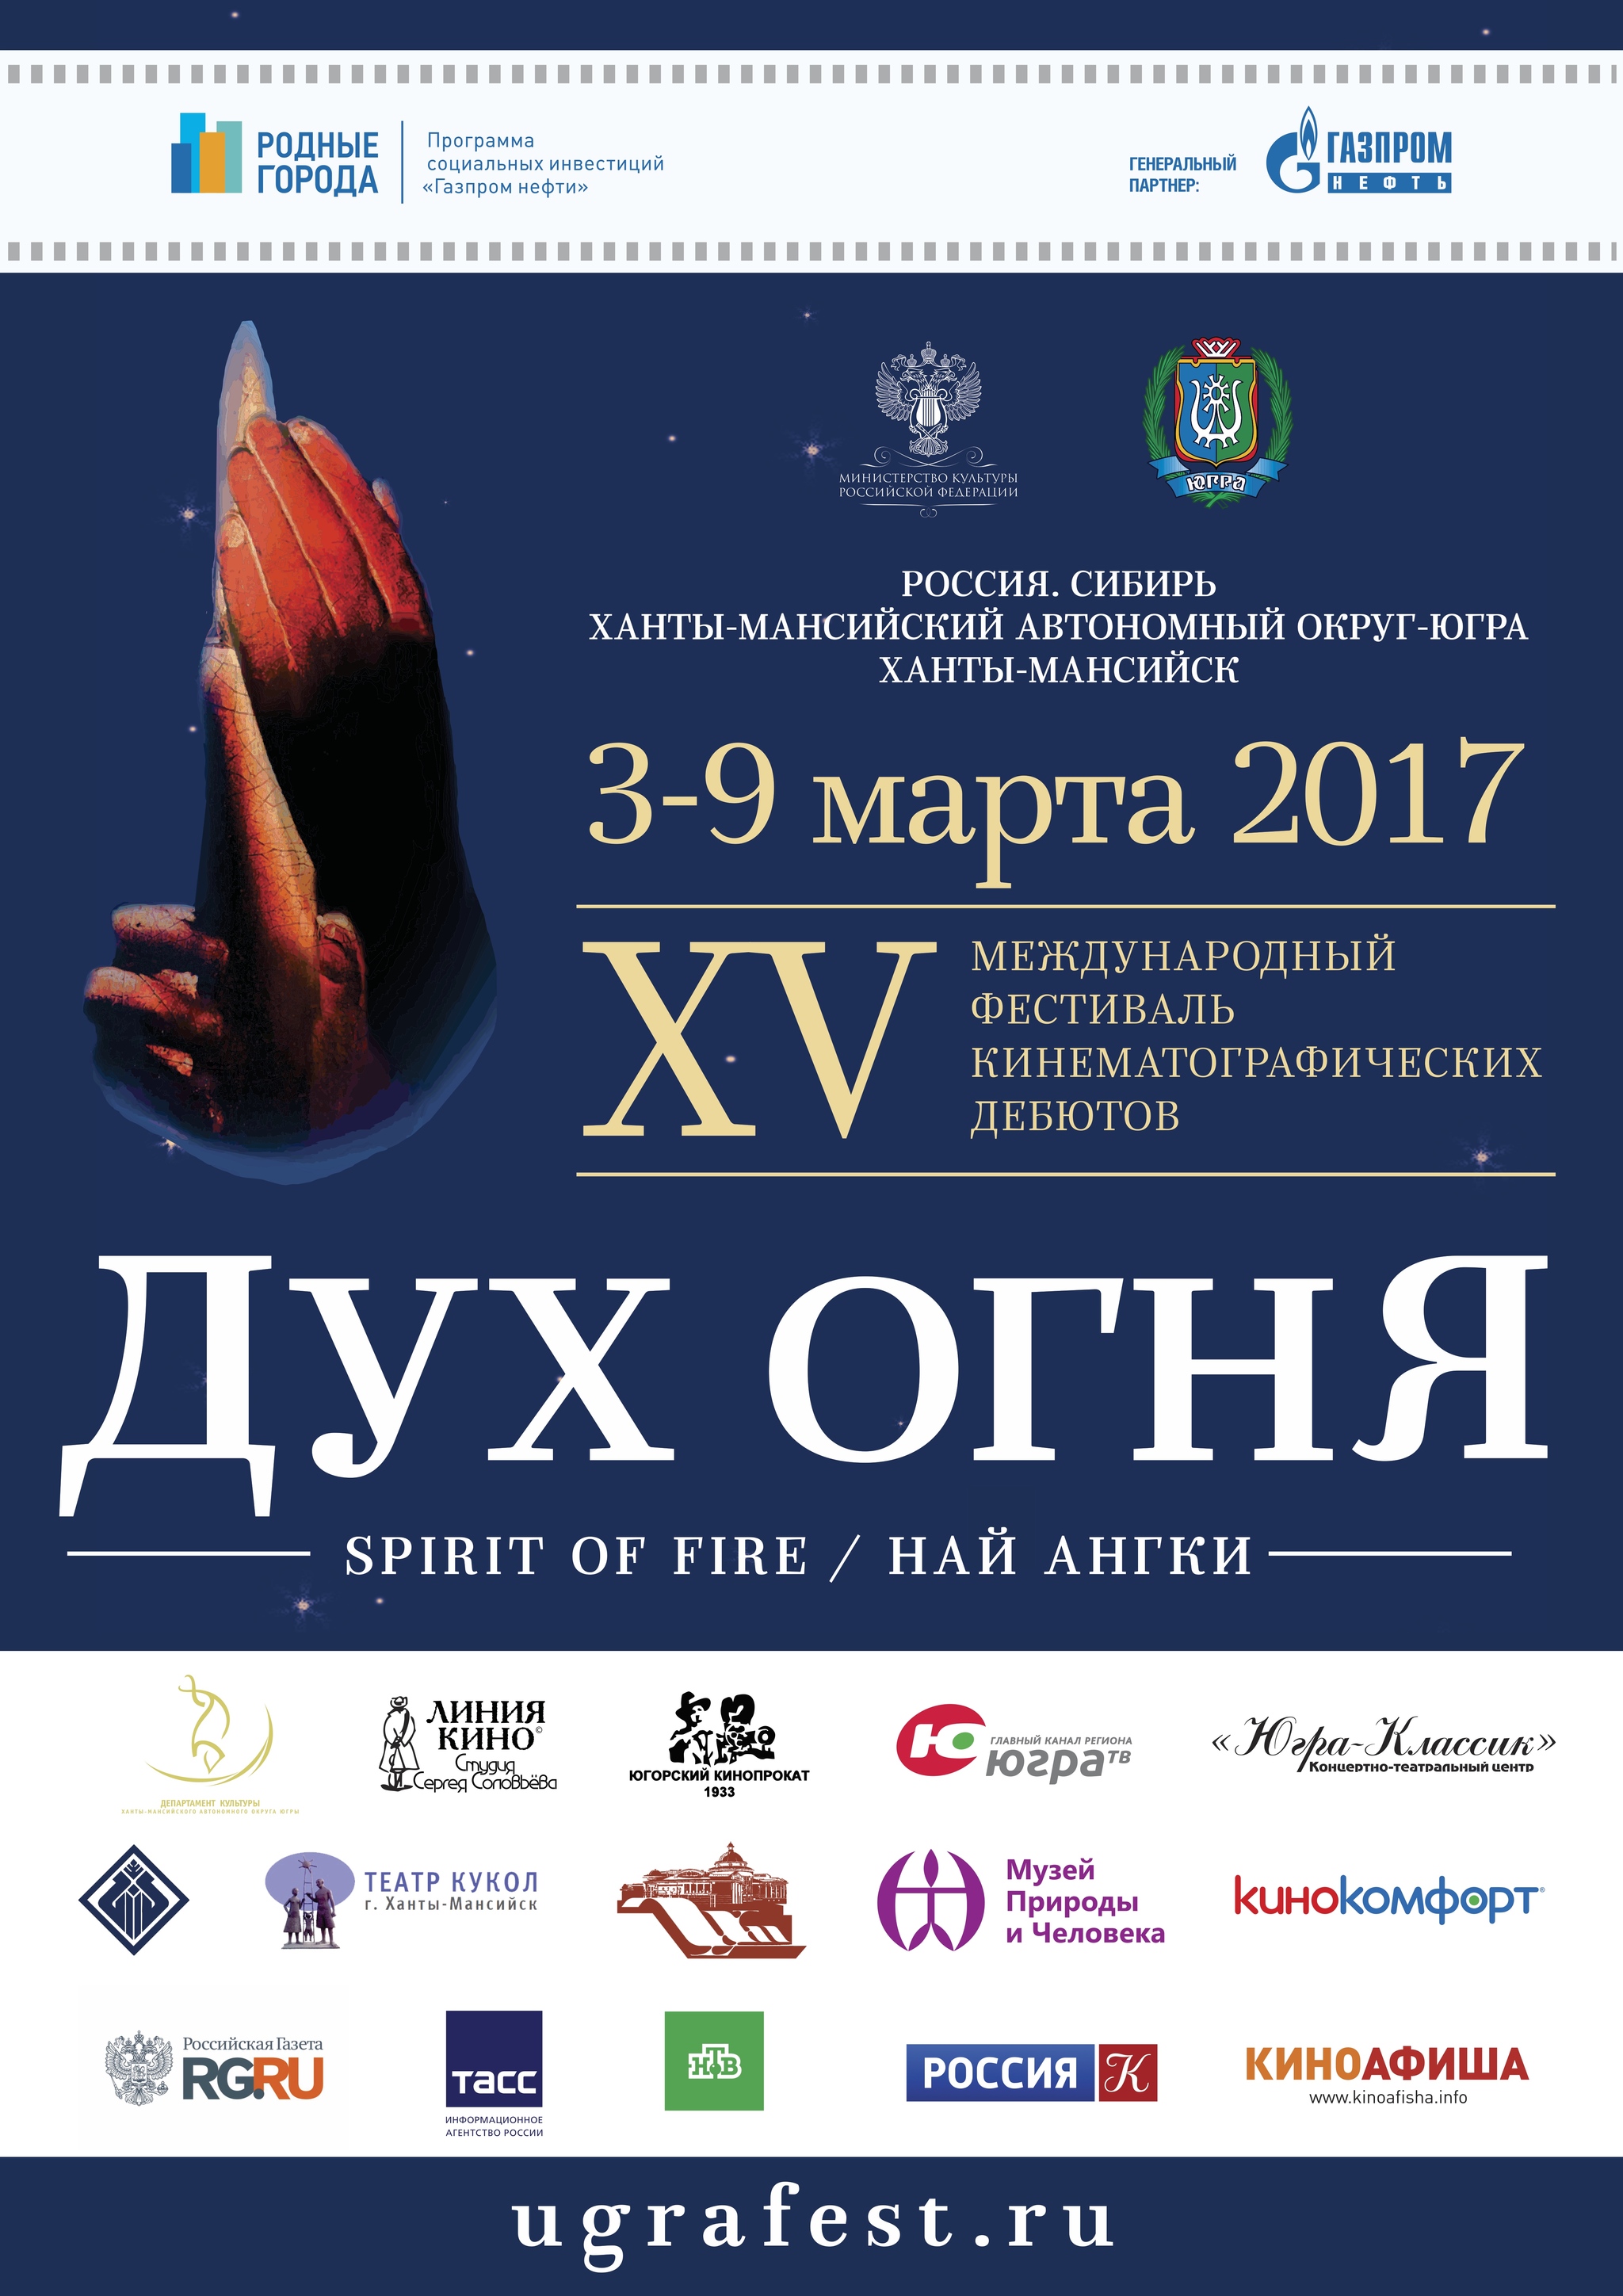 Online-трансляция церемонии закрытия XV МФКД «Дух огня» будет организована на официальном сайте КТЦ «Югра-Классик»   